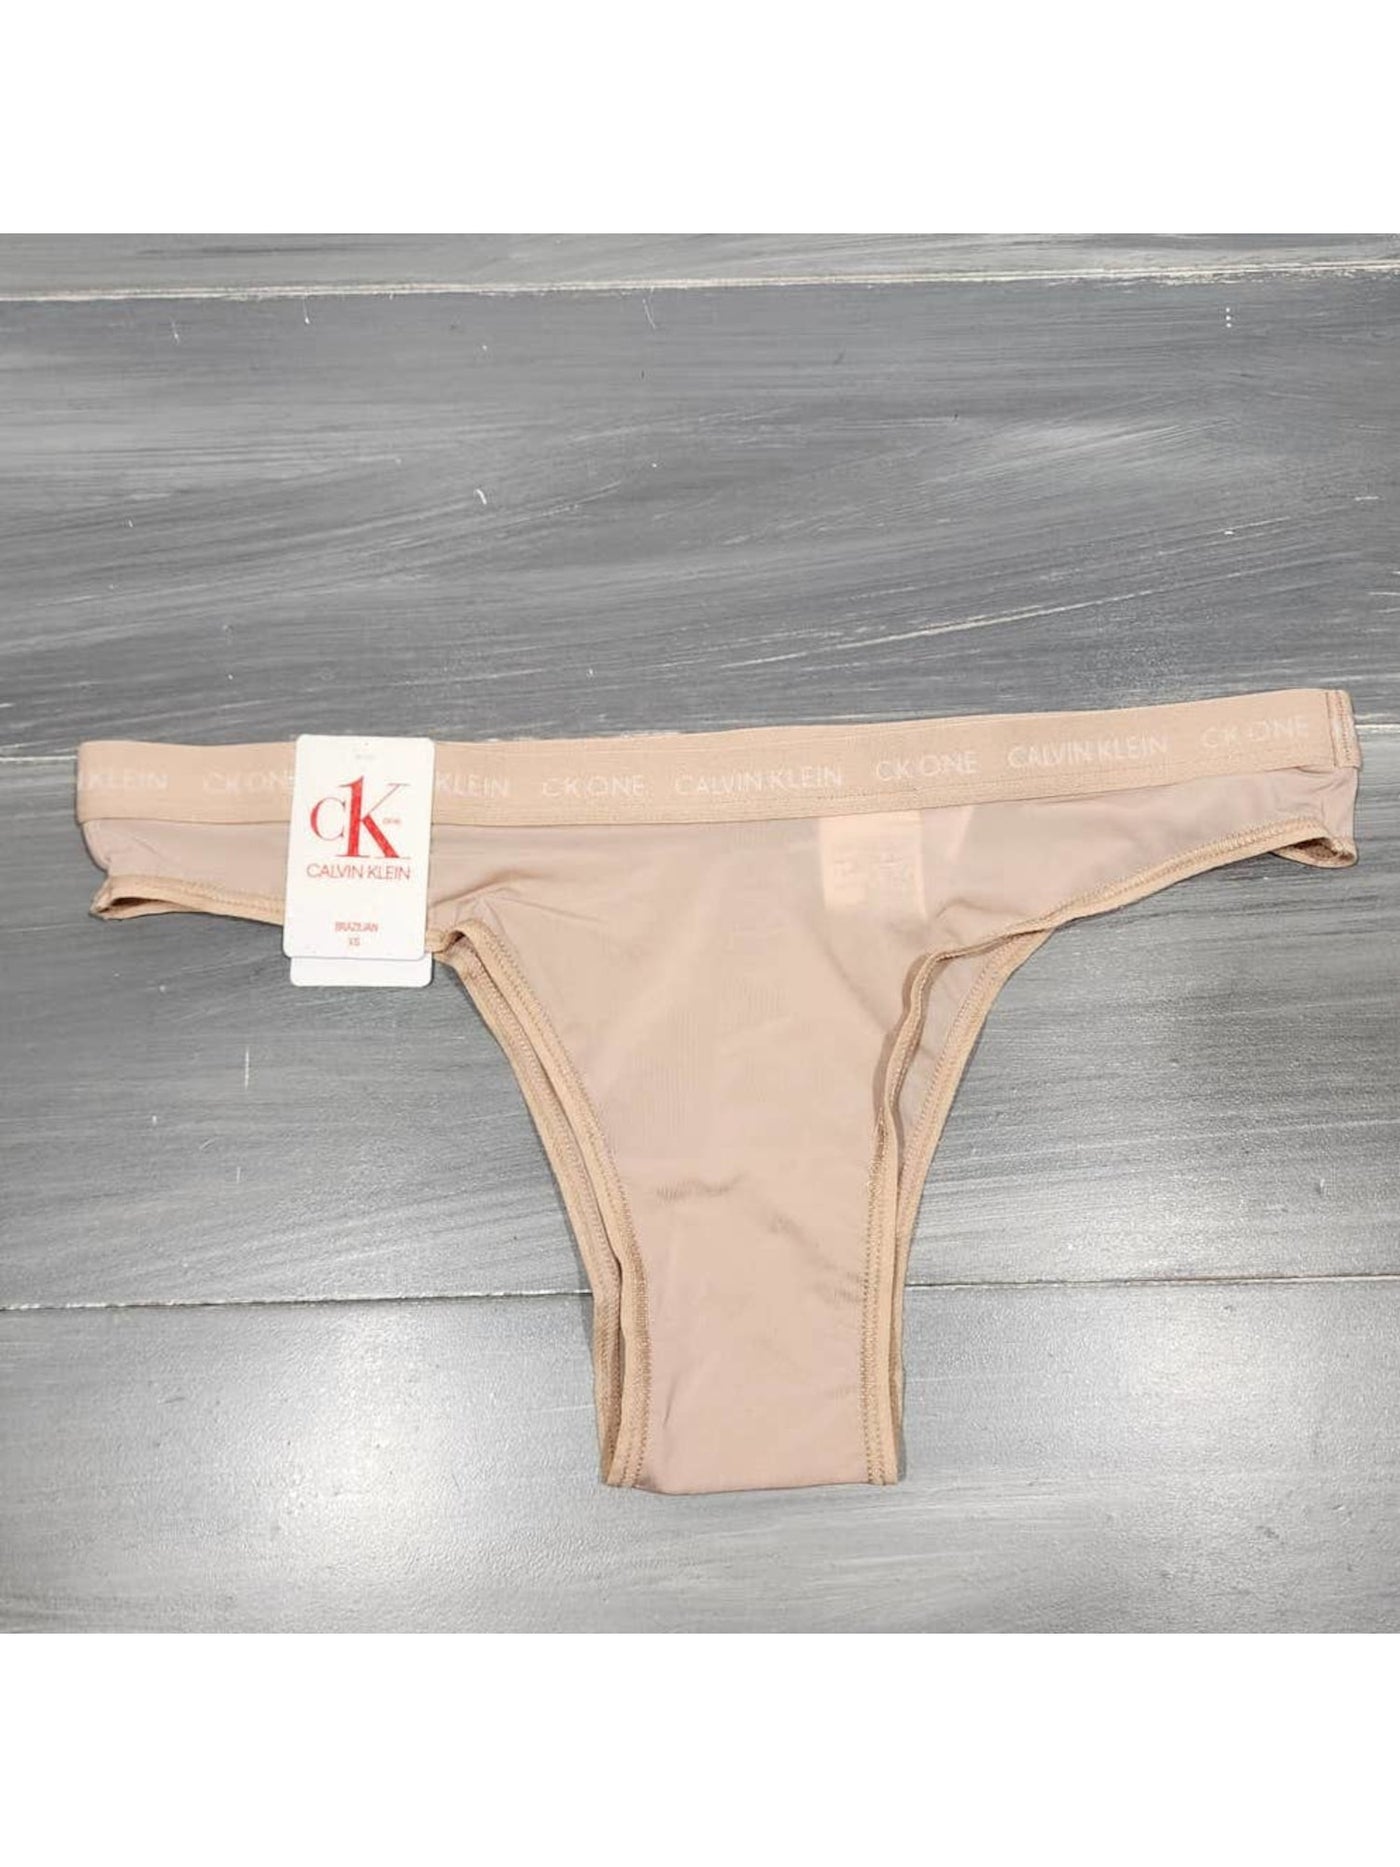 CALVIN KLEIN Intimates Beige Bikini Underwear L